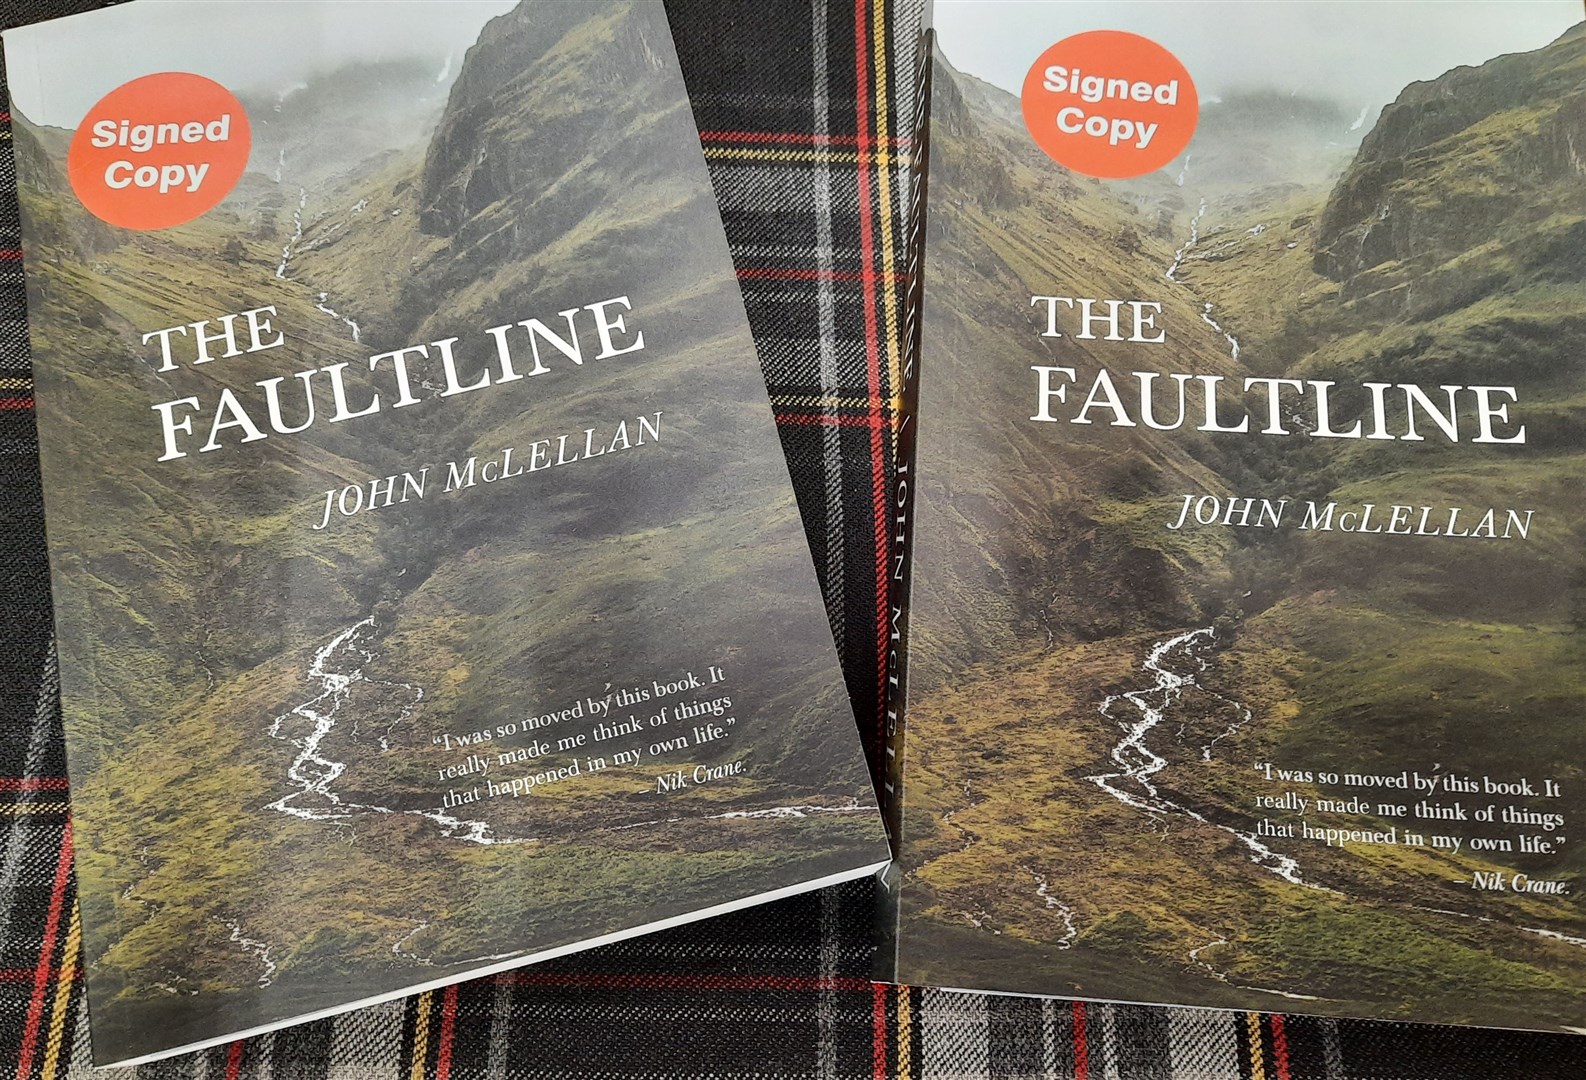 'The Faultline' by John McLellan